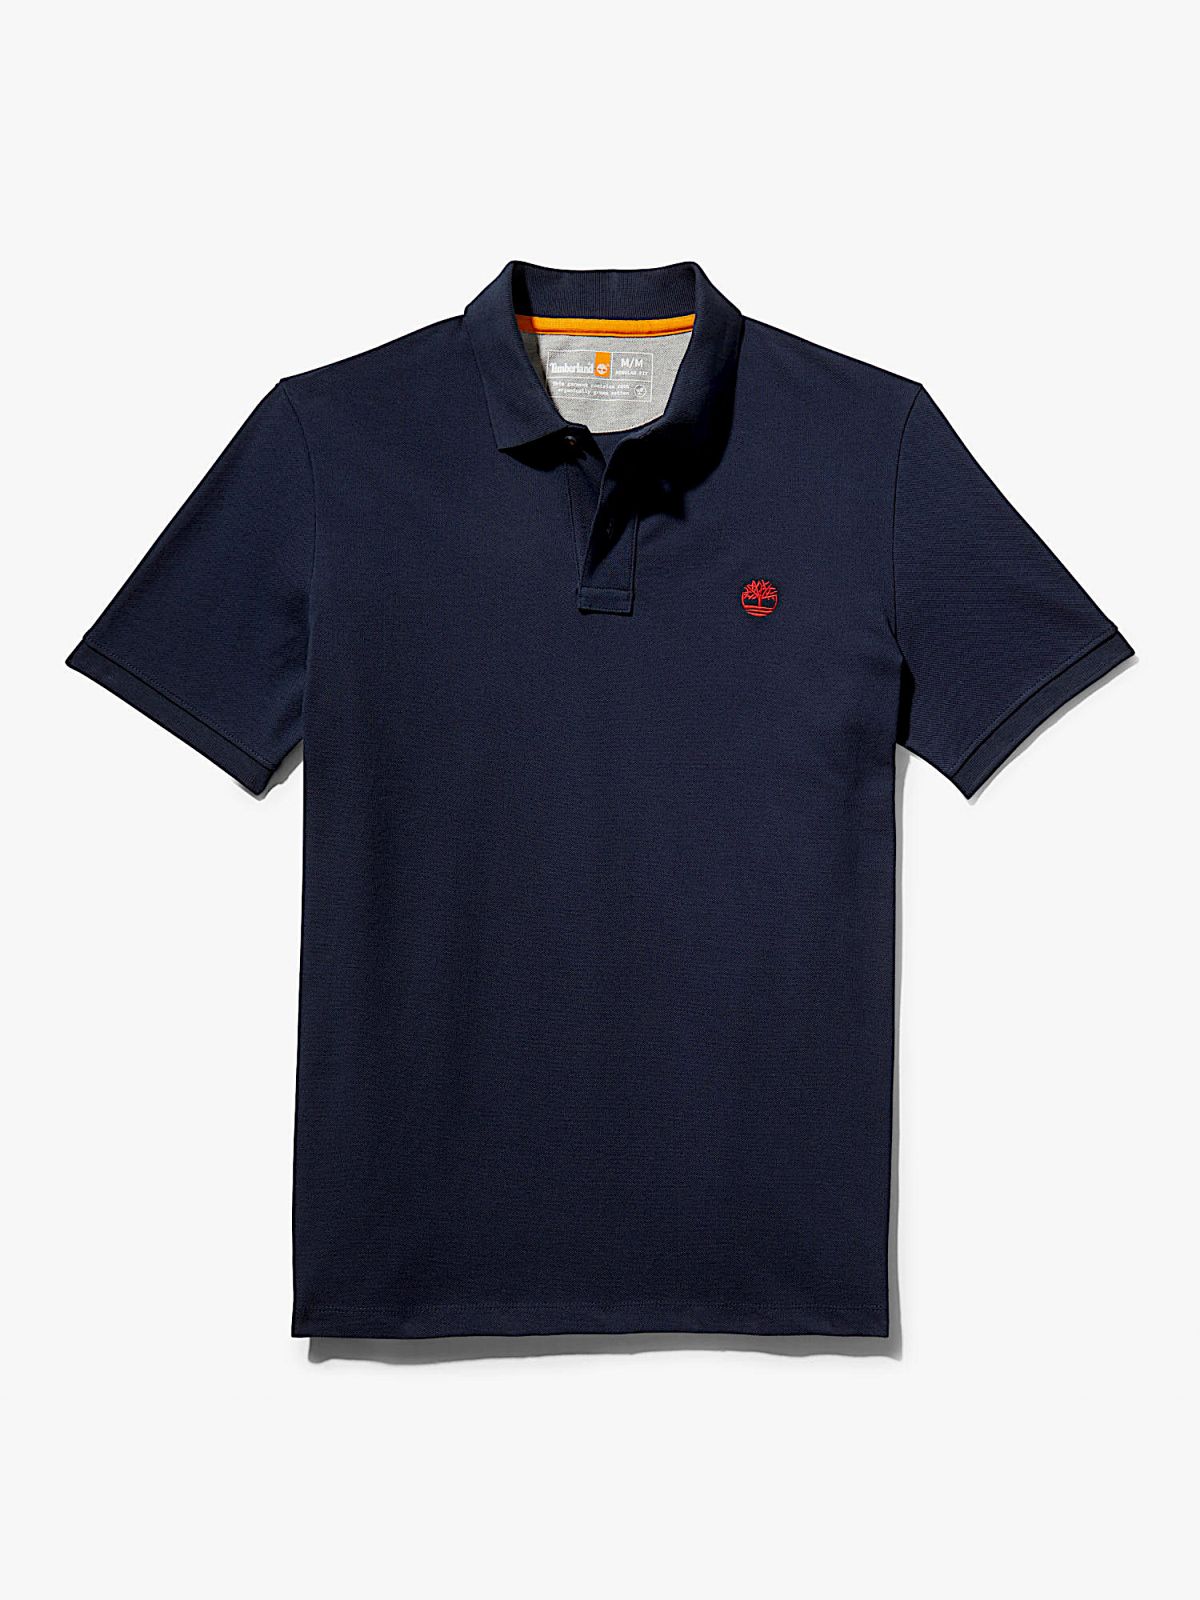  חולצת פולו עם רקמת לוגו של TIMBERLAND